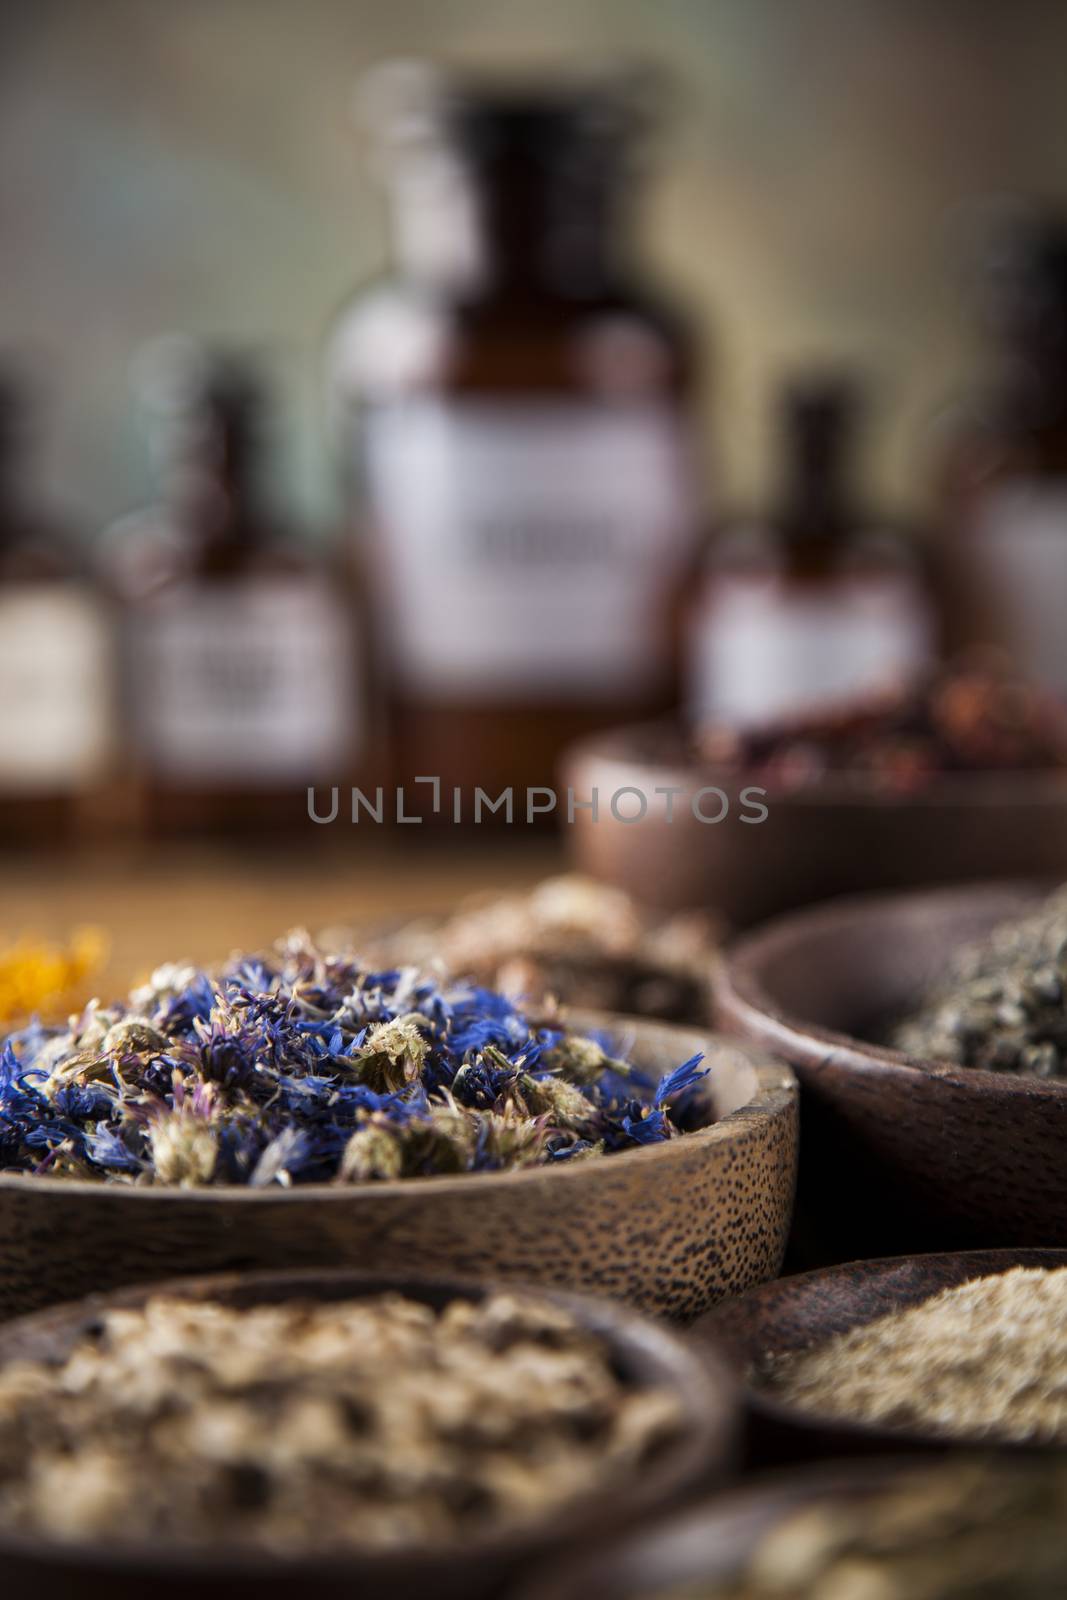 Herbs medicine and vintage wooden desk background by JanPietruszka